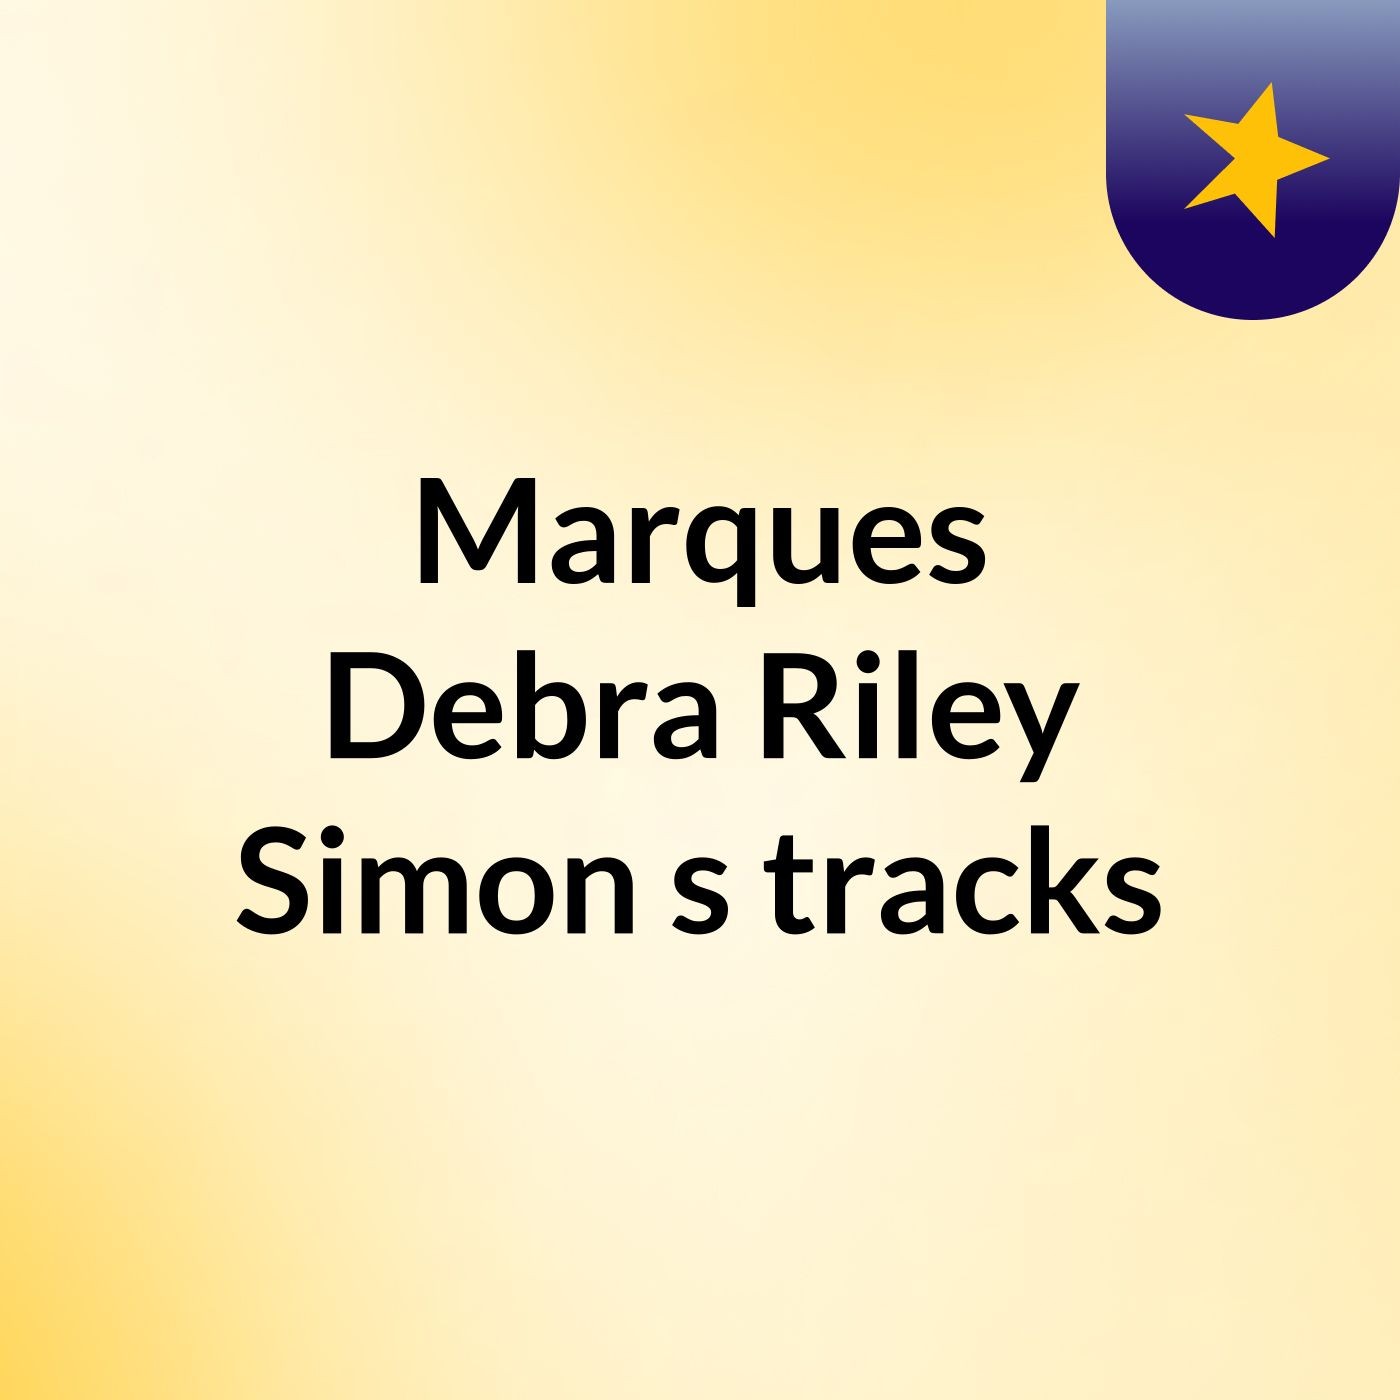 Marques Debra Riley Simon's tracks